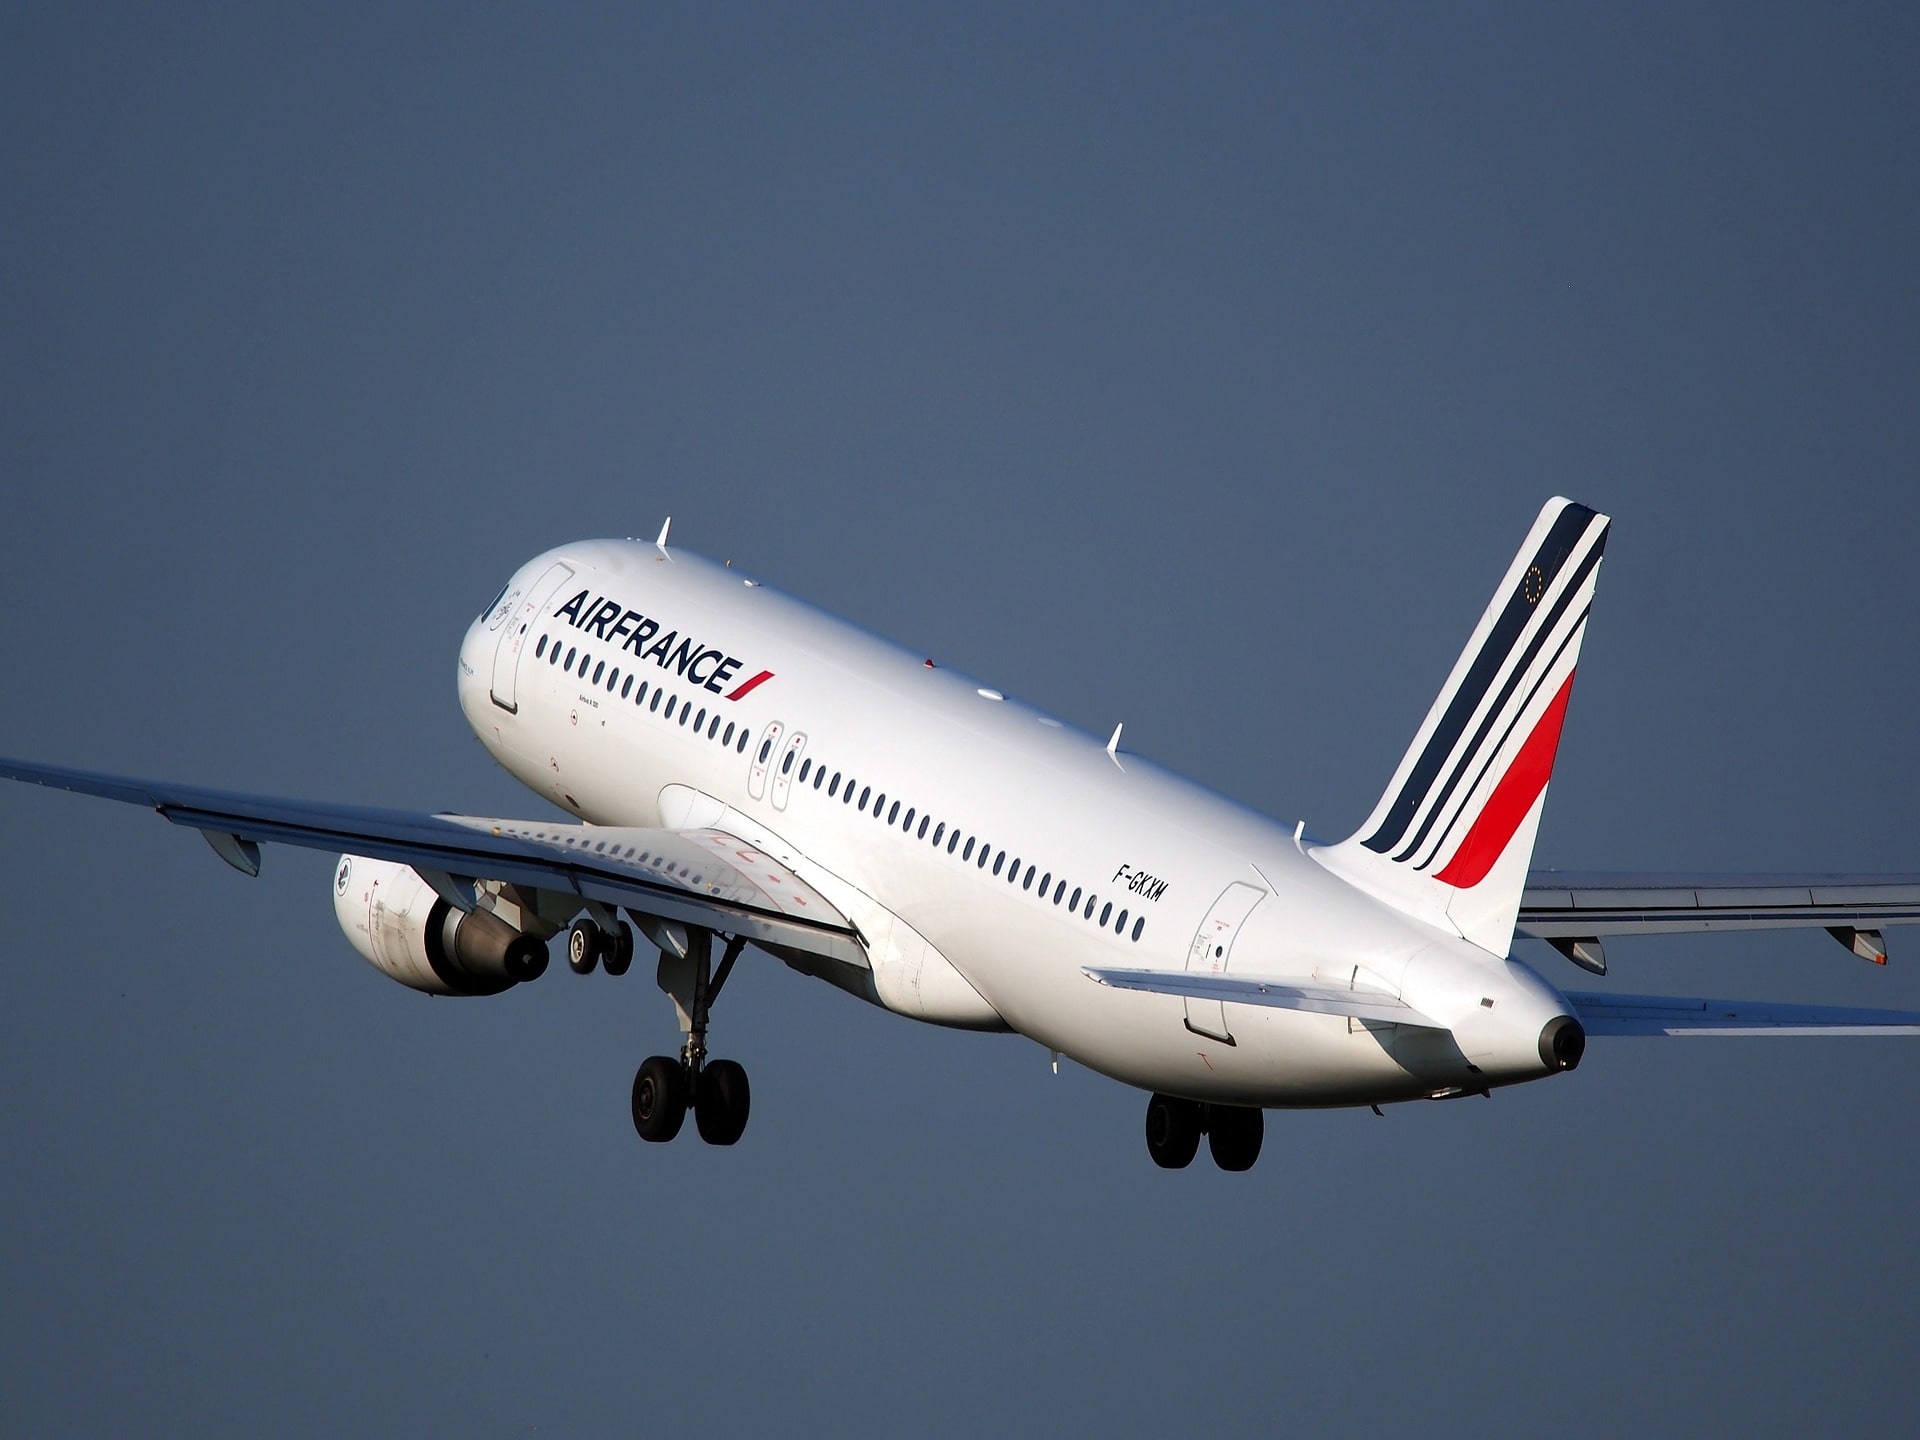 Avion d'Air France décollant de l'aéroport d'Orly